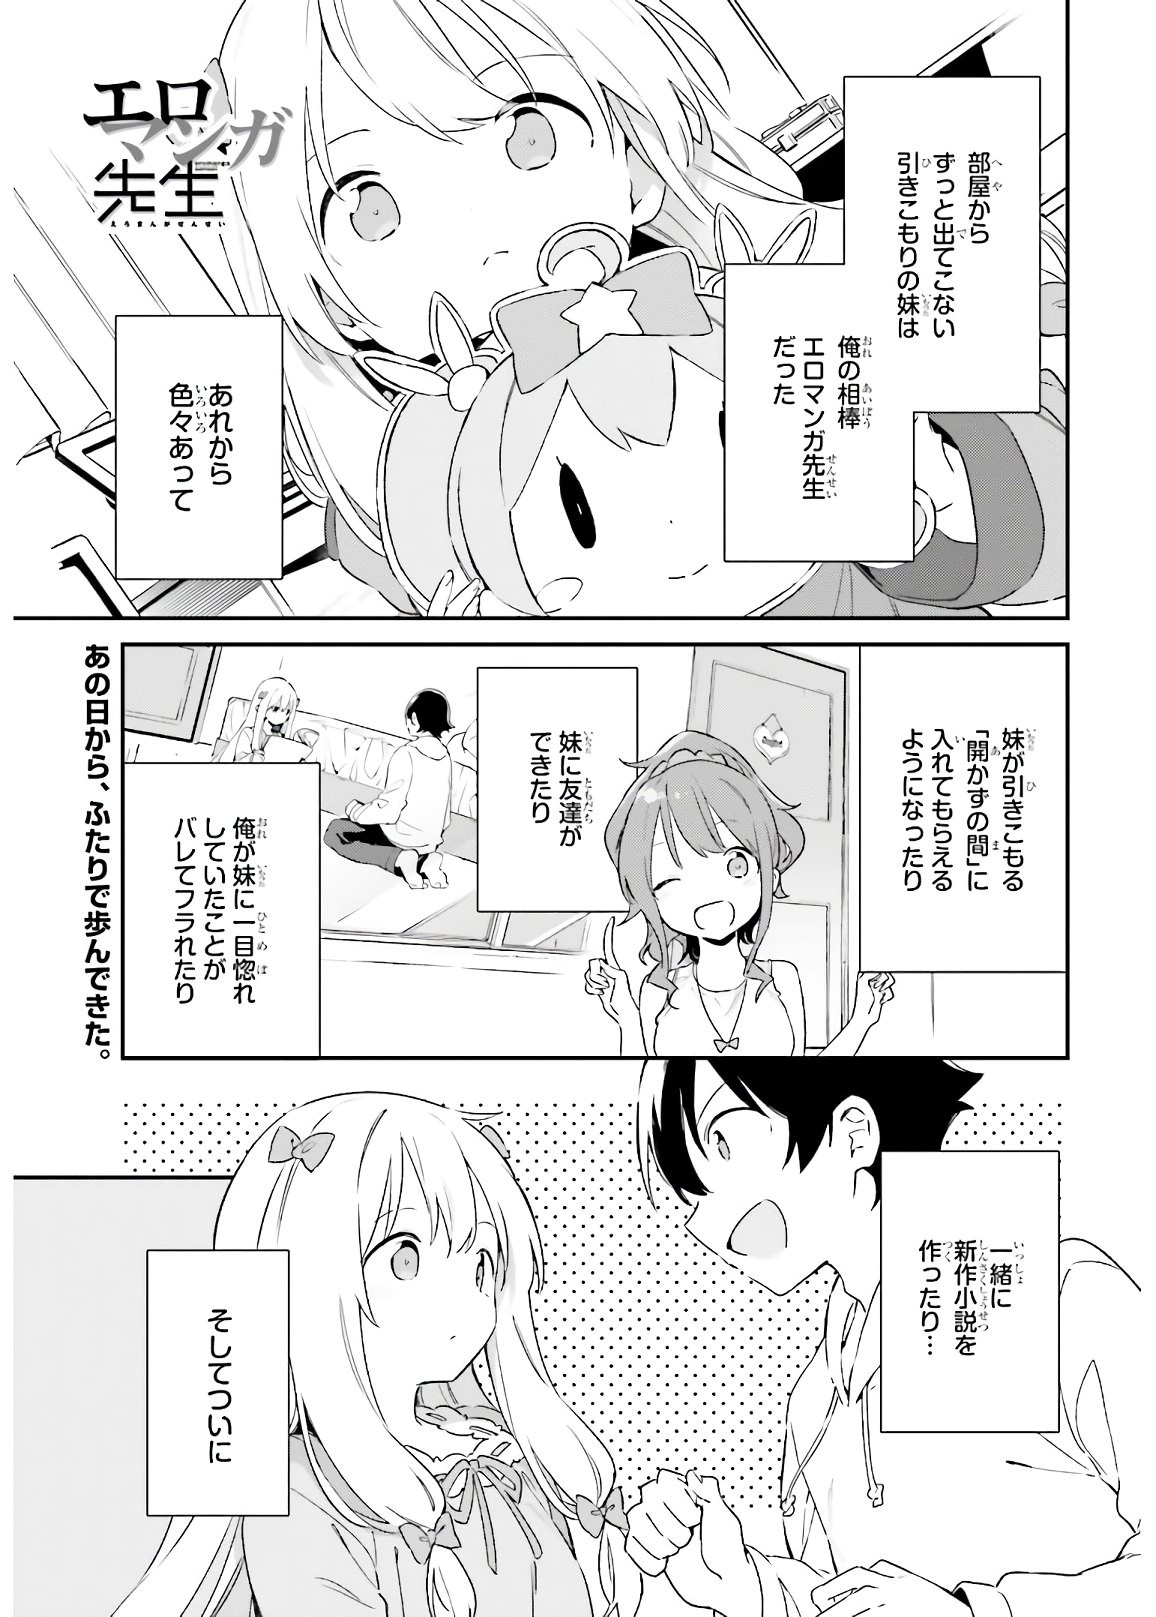 Ero Manga Sensei - Chapter 74 - Page 1